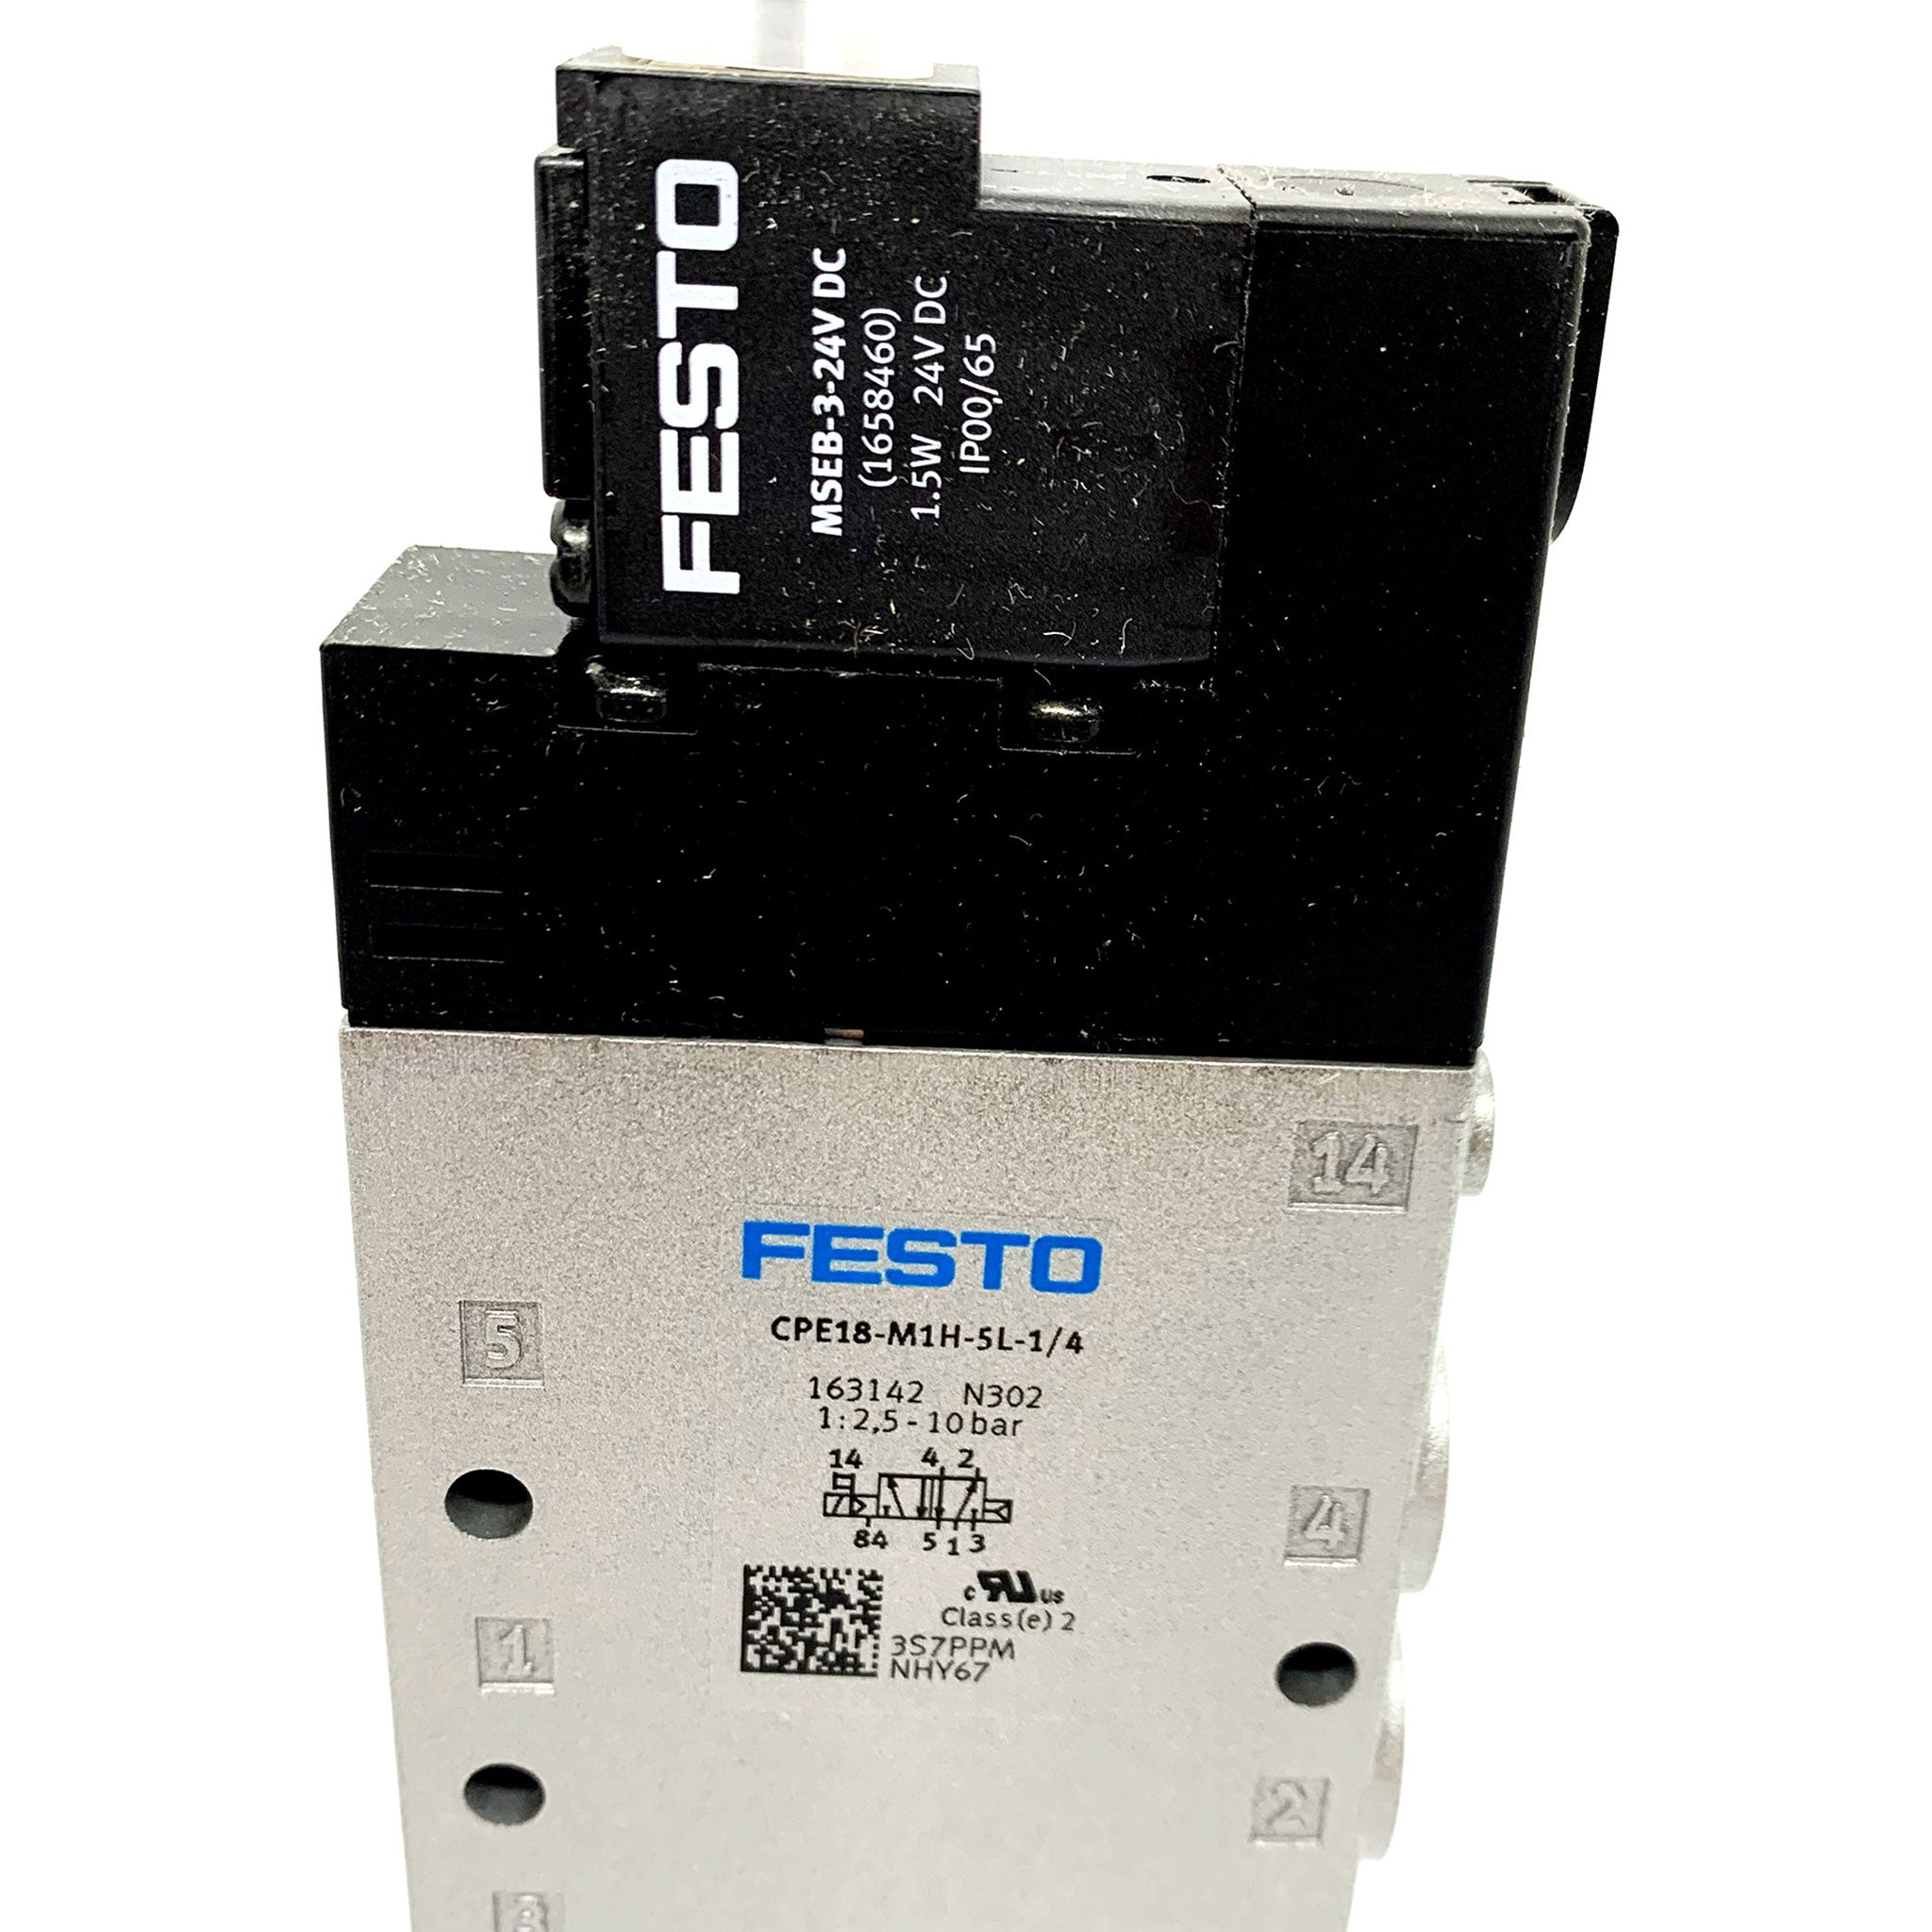 Festo Solonoid Valve P/N CPE18-M1H-5L-1/4